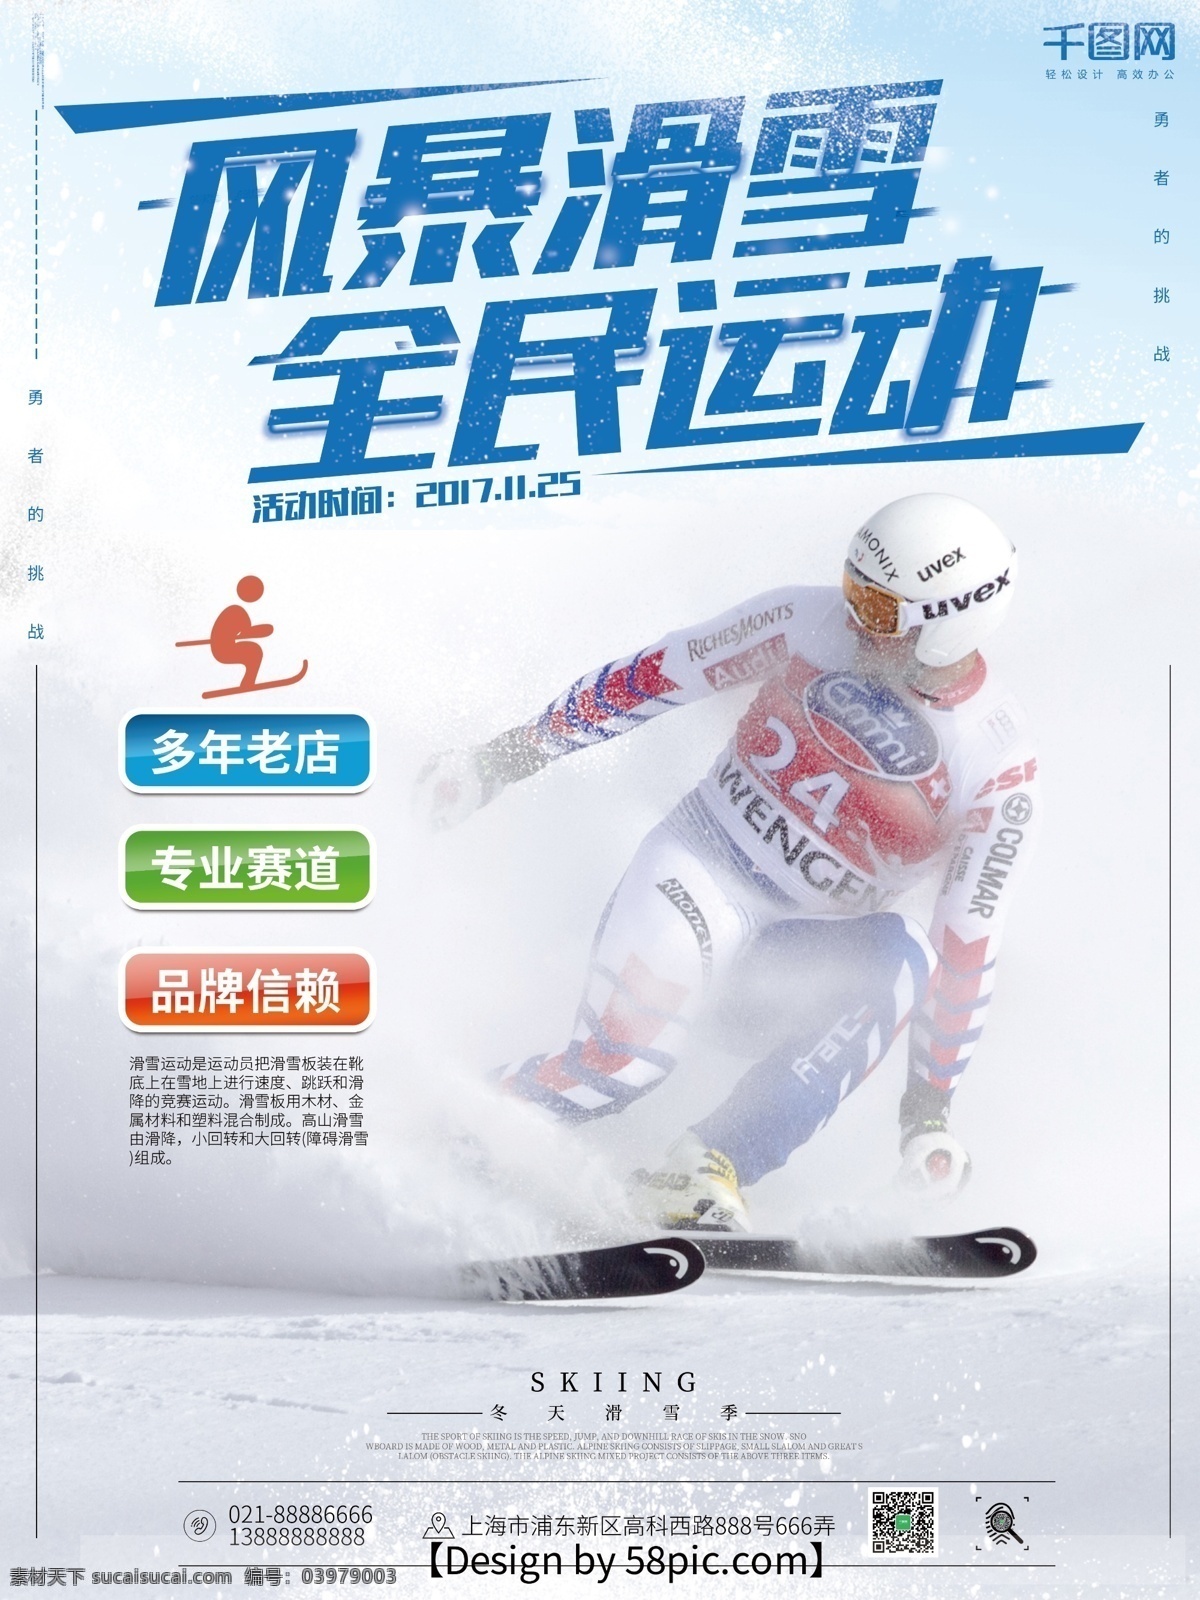 滑雪 运动 白色 时尚 商业 海报 滑雪海报 滑雪运动海报 运动海报 冬季滑雪海报 时尚运动海报 全民运动海报 商业海报